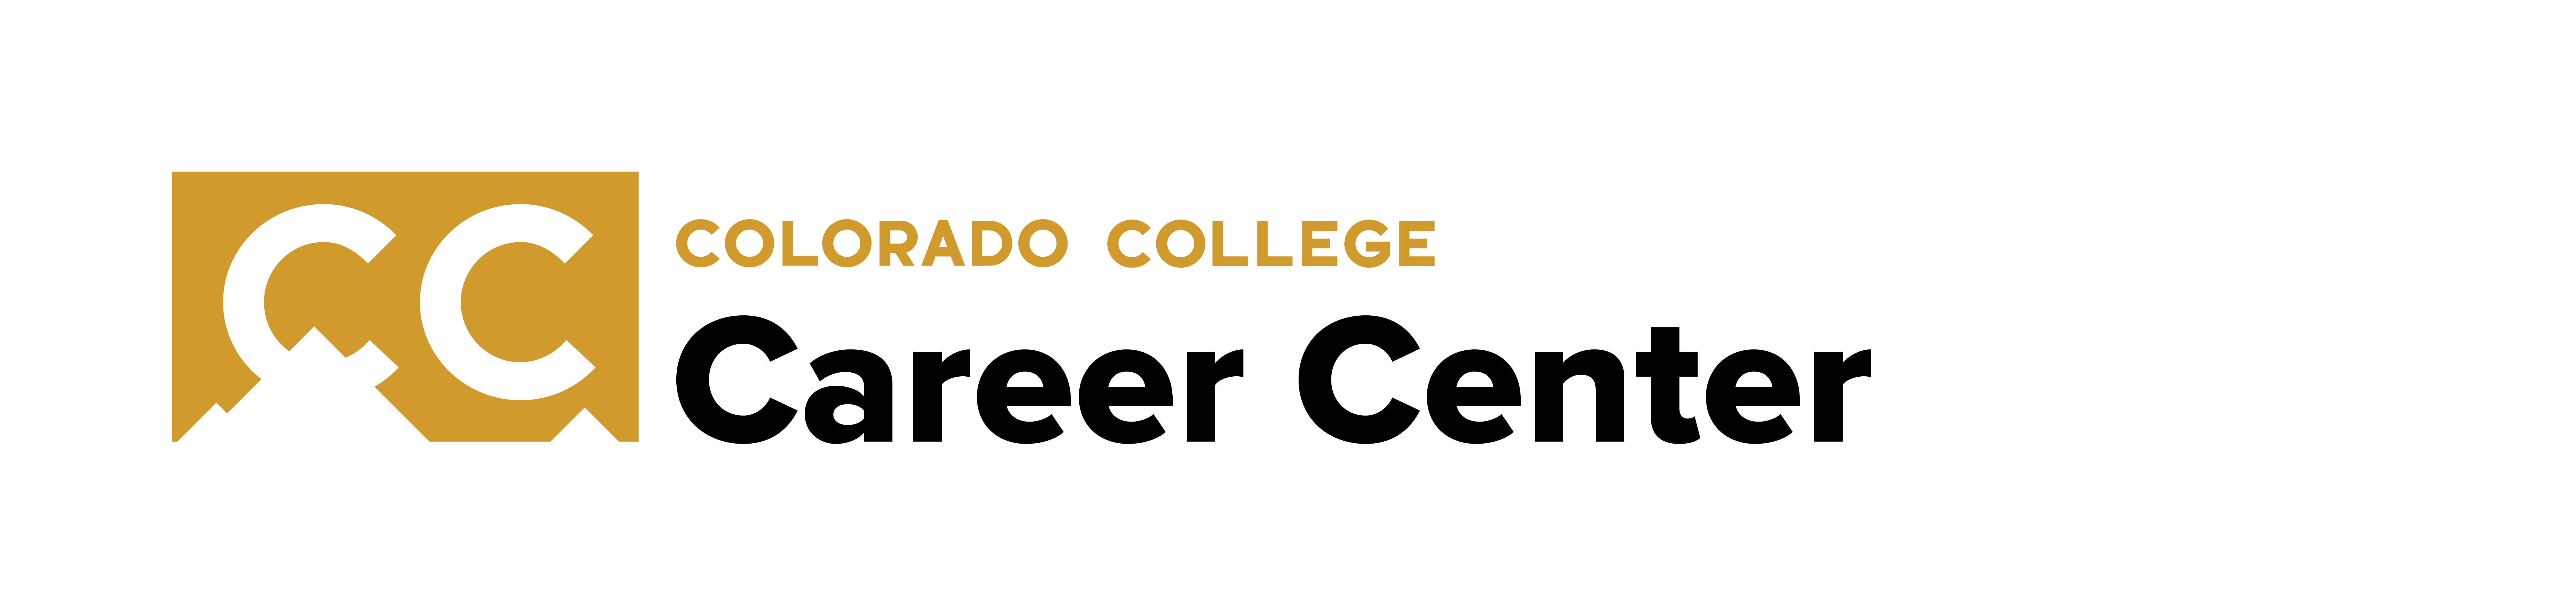 Colorado College_Logo